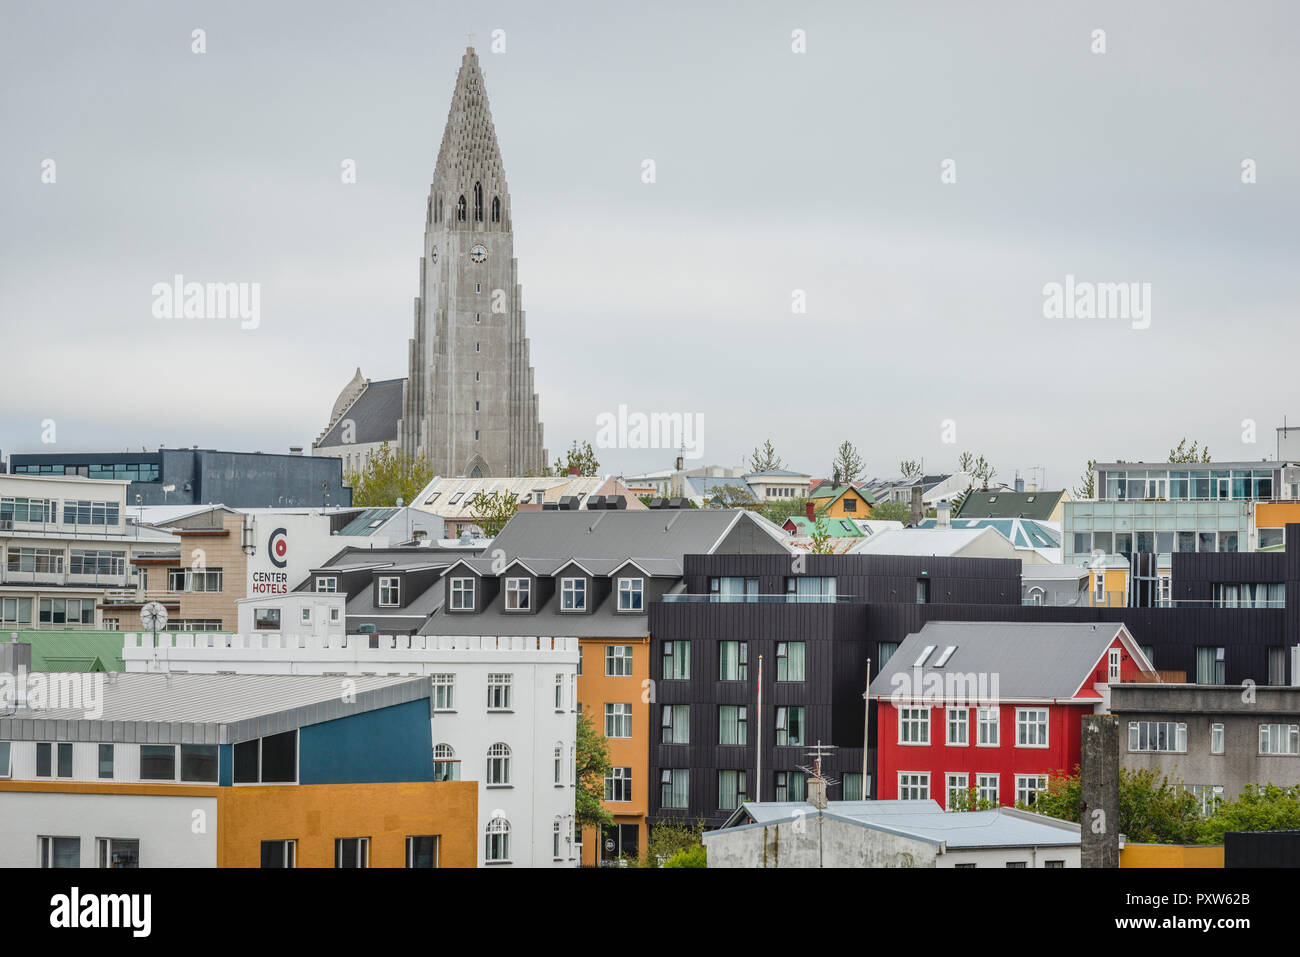 Iceland, Reykjavík, Hallgrímskirkja Stock Photo